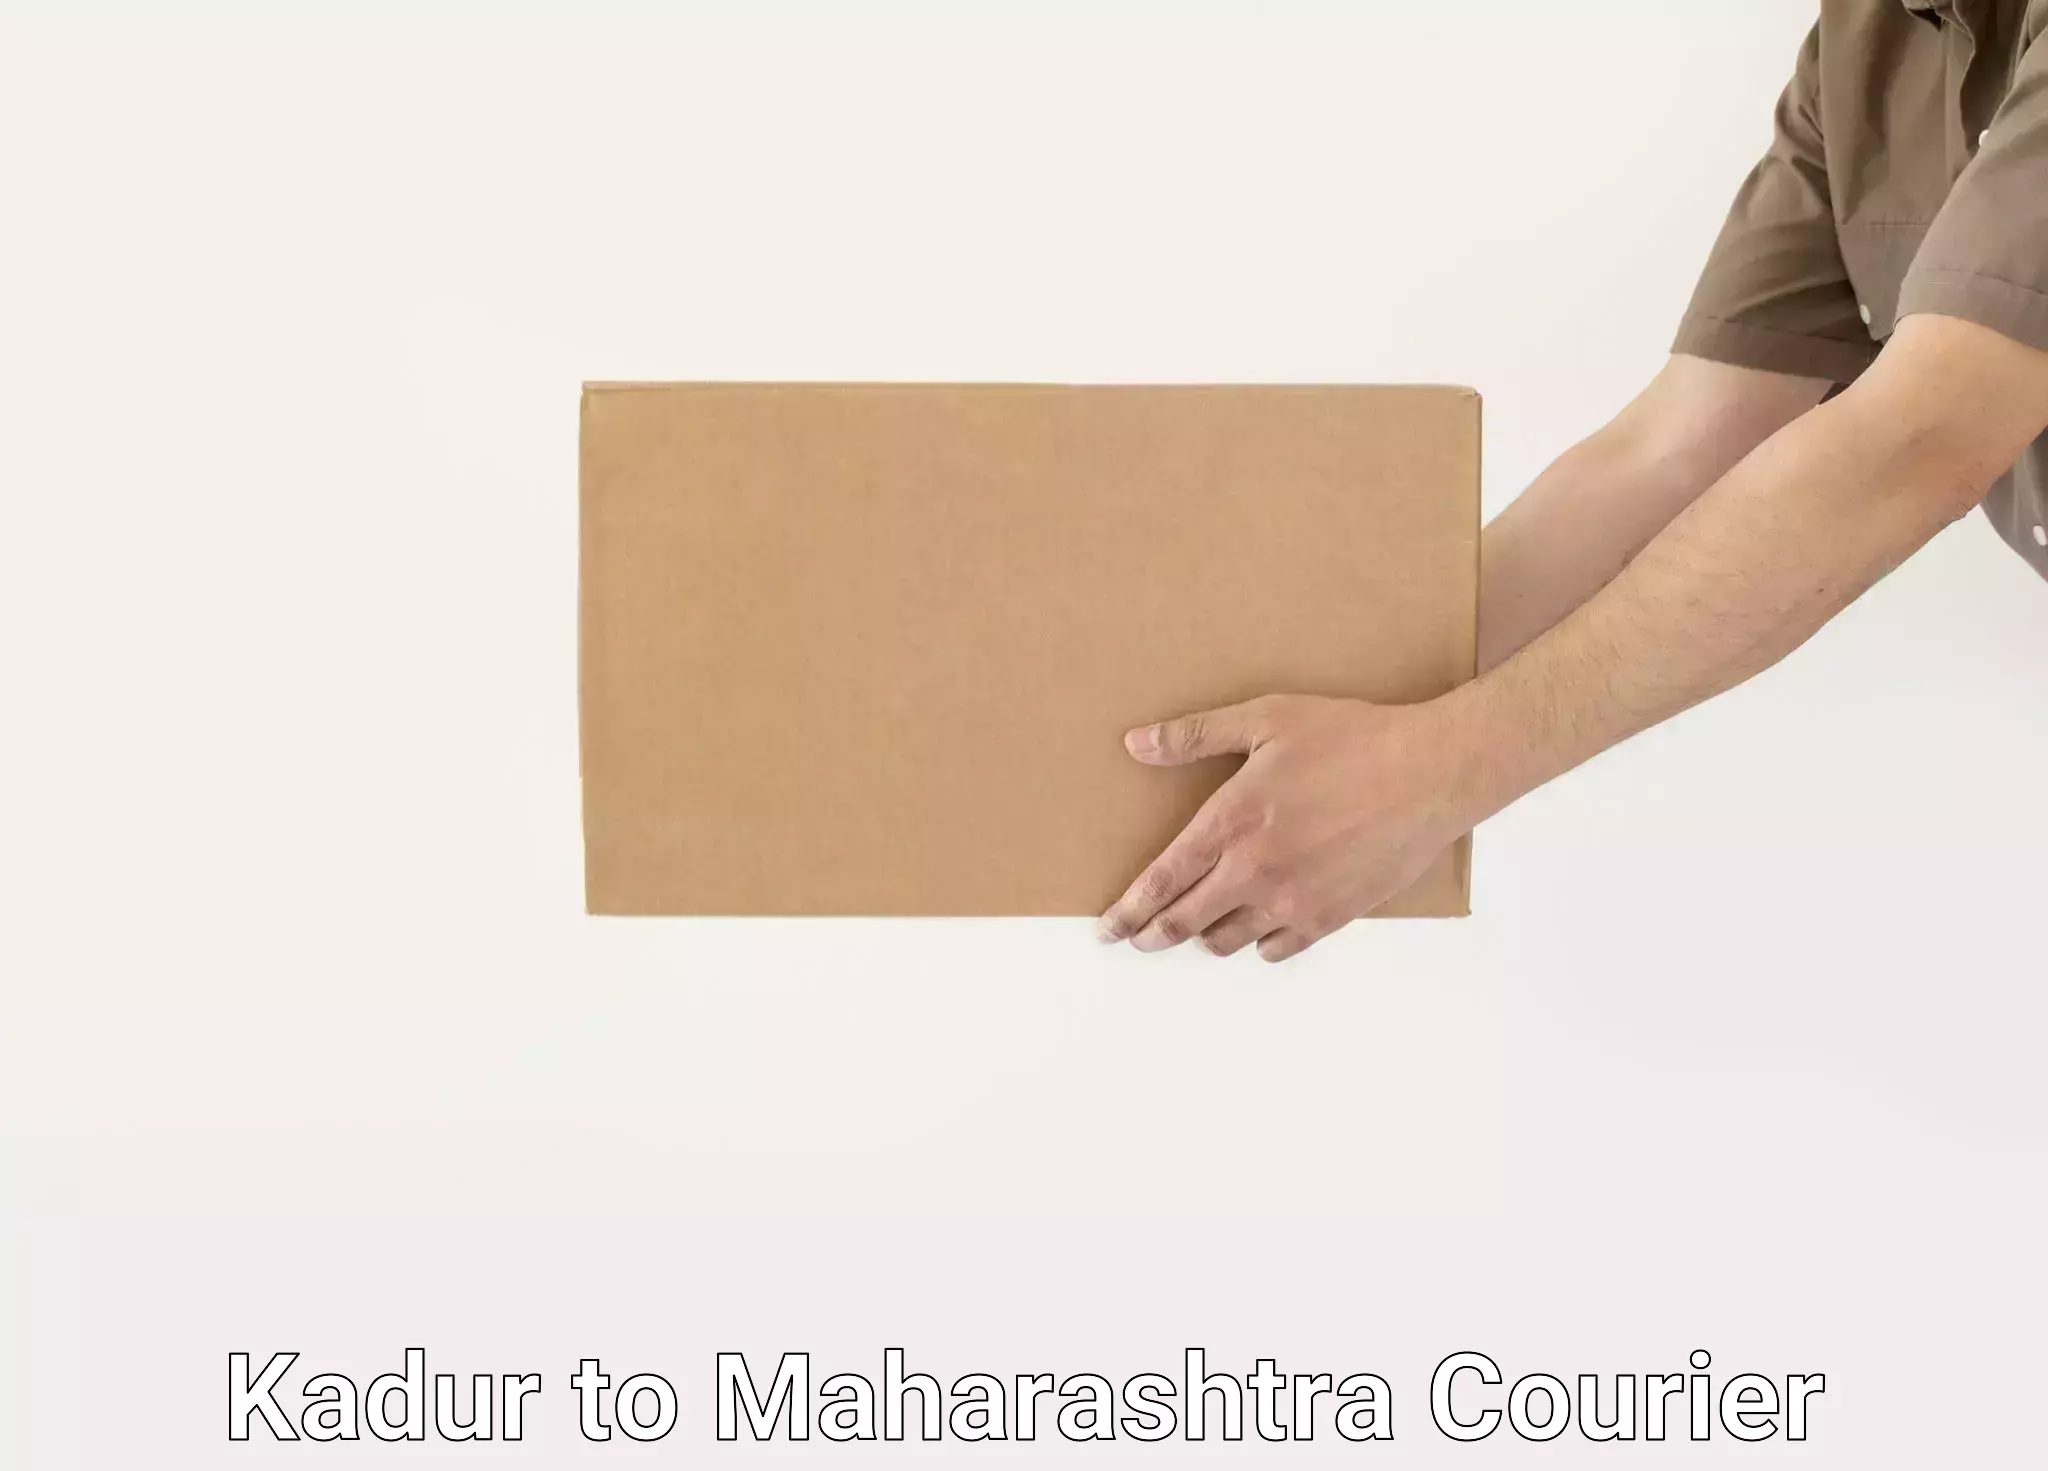 Furniture moving experts Kadur to Maharashtra